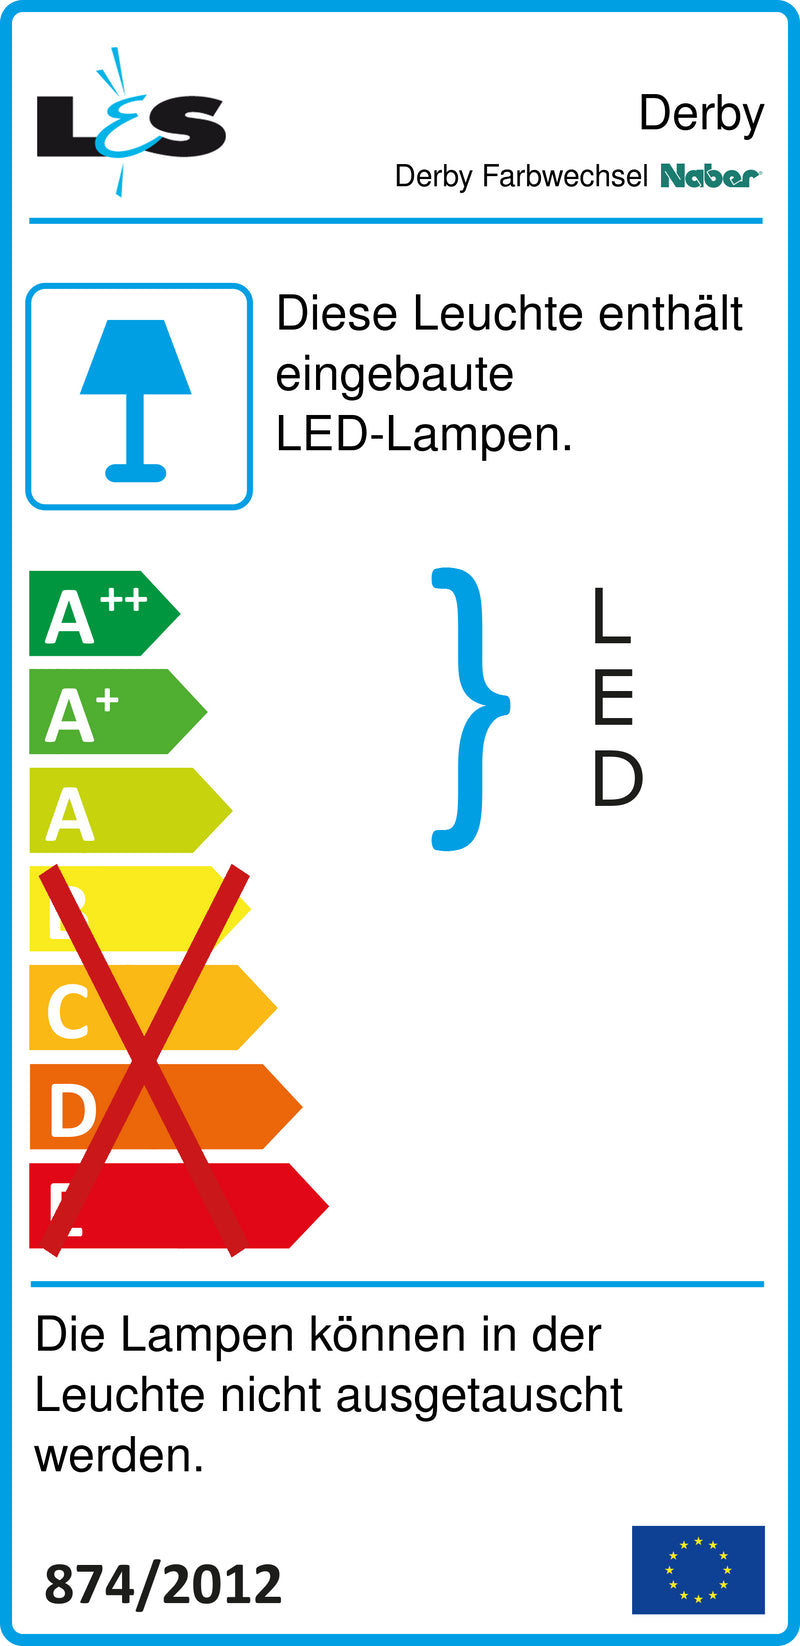 E-Label zu Zeichnung zu Derby Farbwechsel LED als Variante L 850 mm, 48 LED, 11,52 W, alufarbig von Naber GmbH in der Kategorie Lichttechnik in Österreich auf conceptshop.at